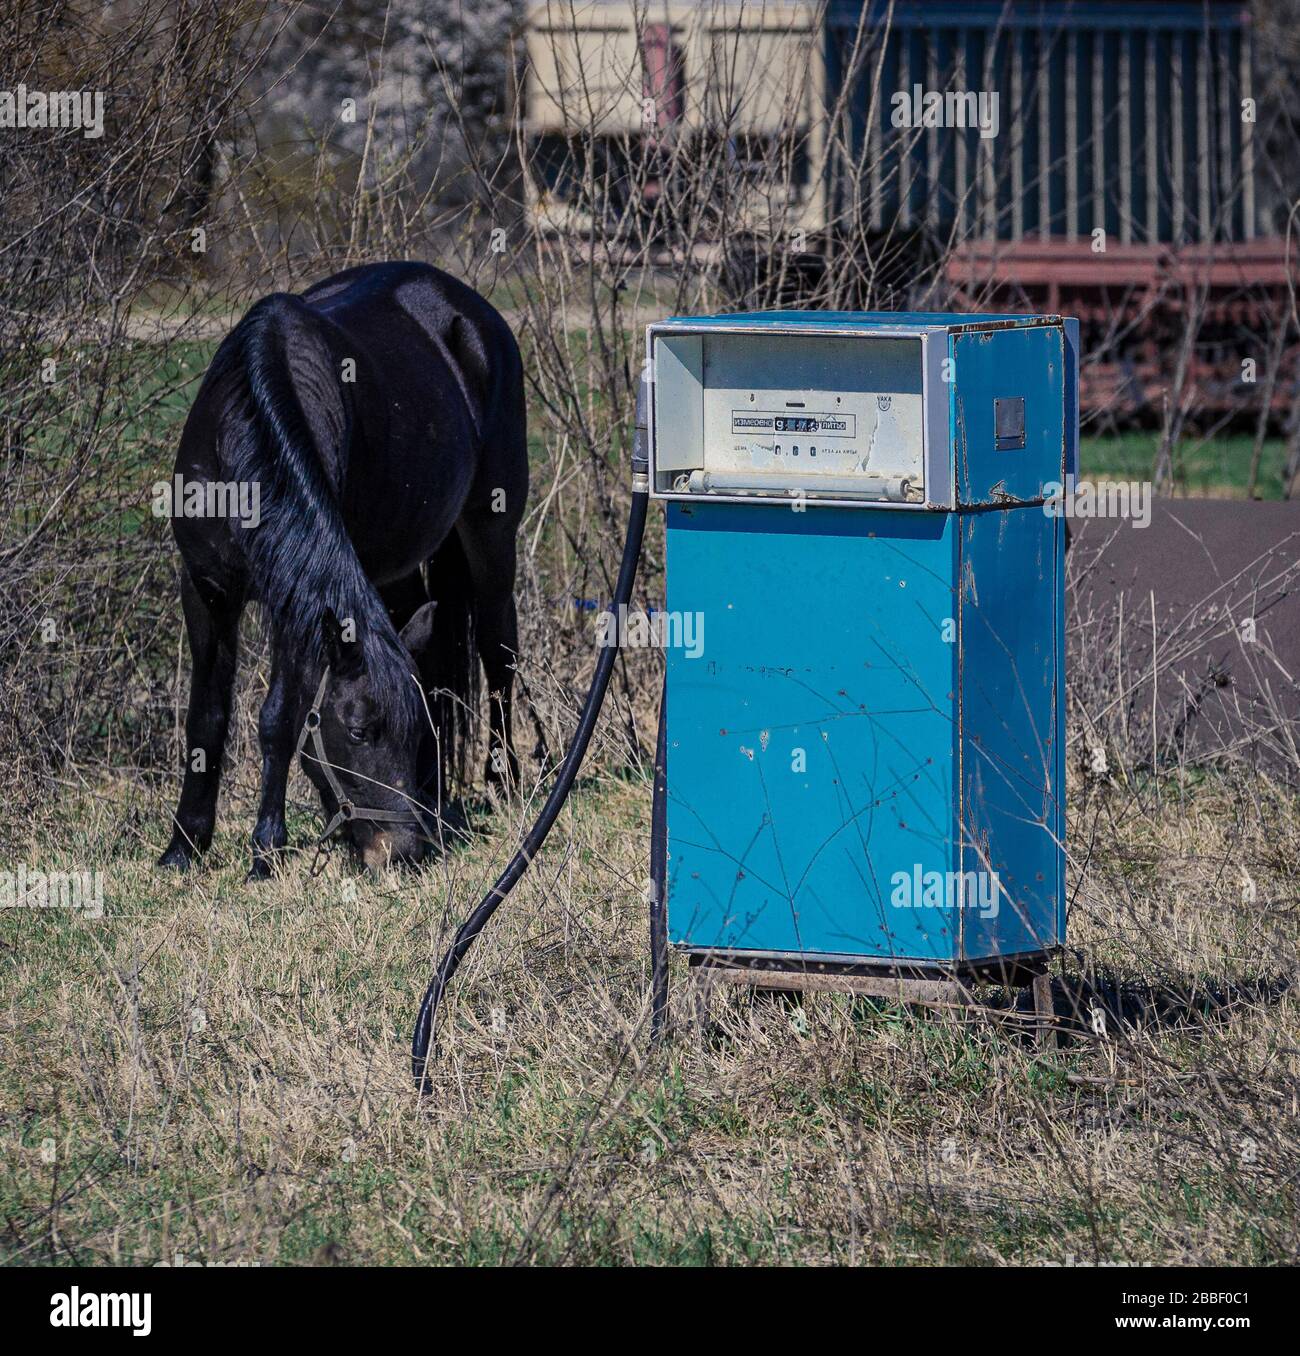 Vieja bomba de gasolina azul de europa del este en el campo de los agricultores con un caballo de pastoreo Bulgaria Foto de stock